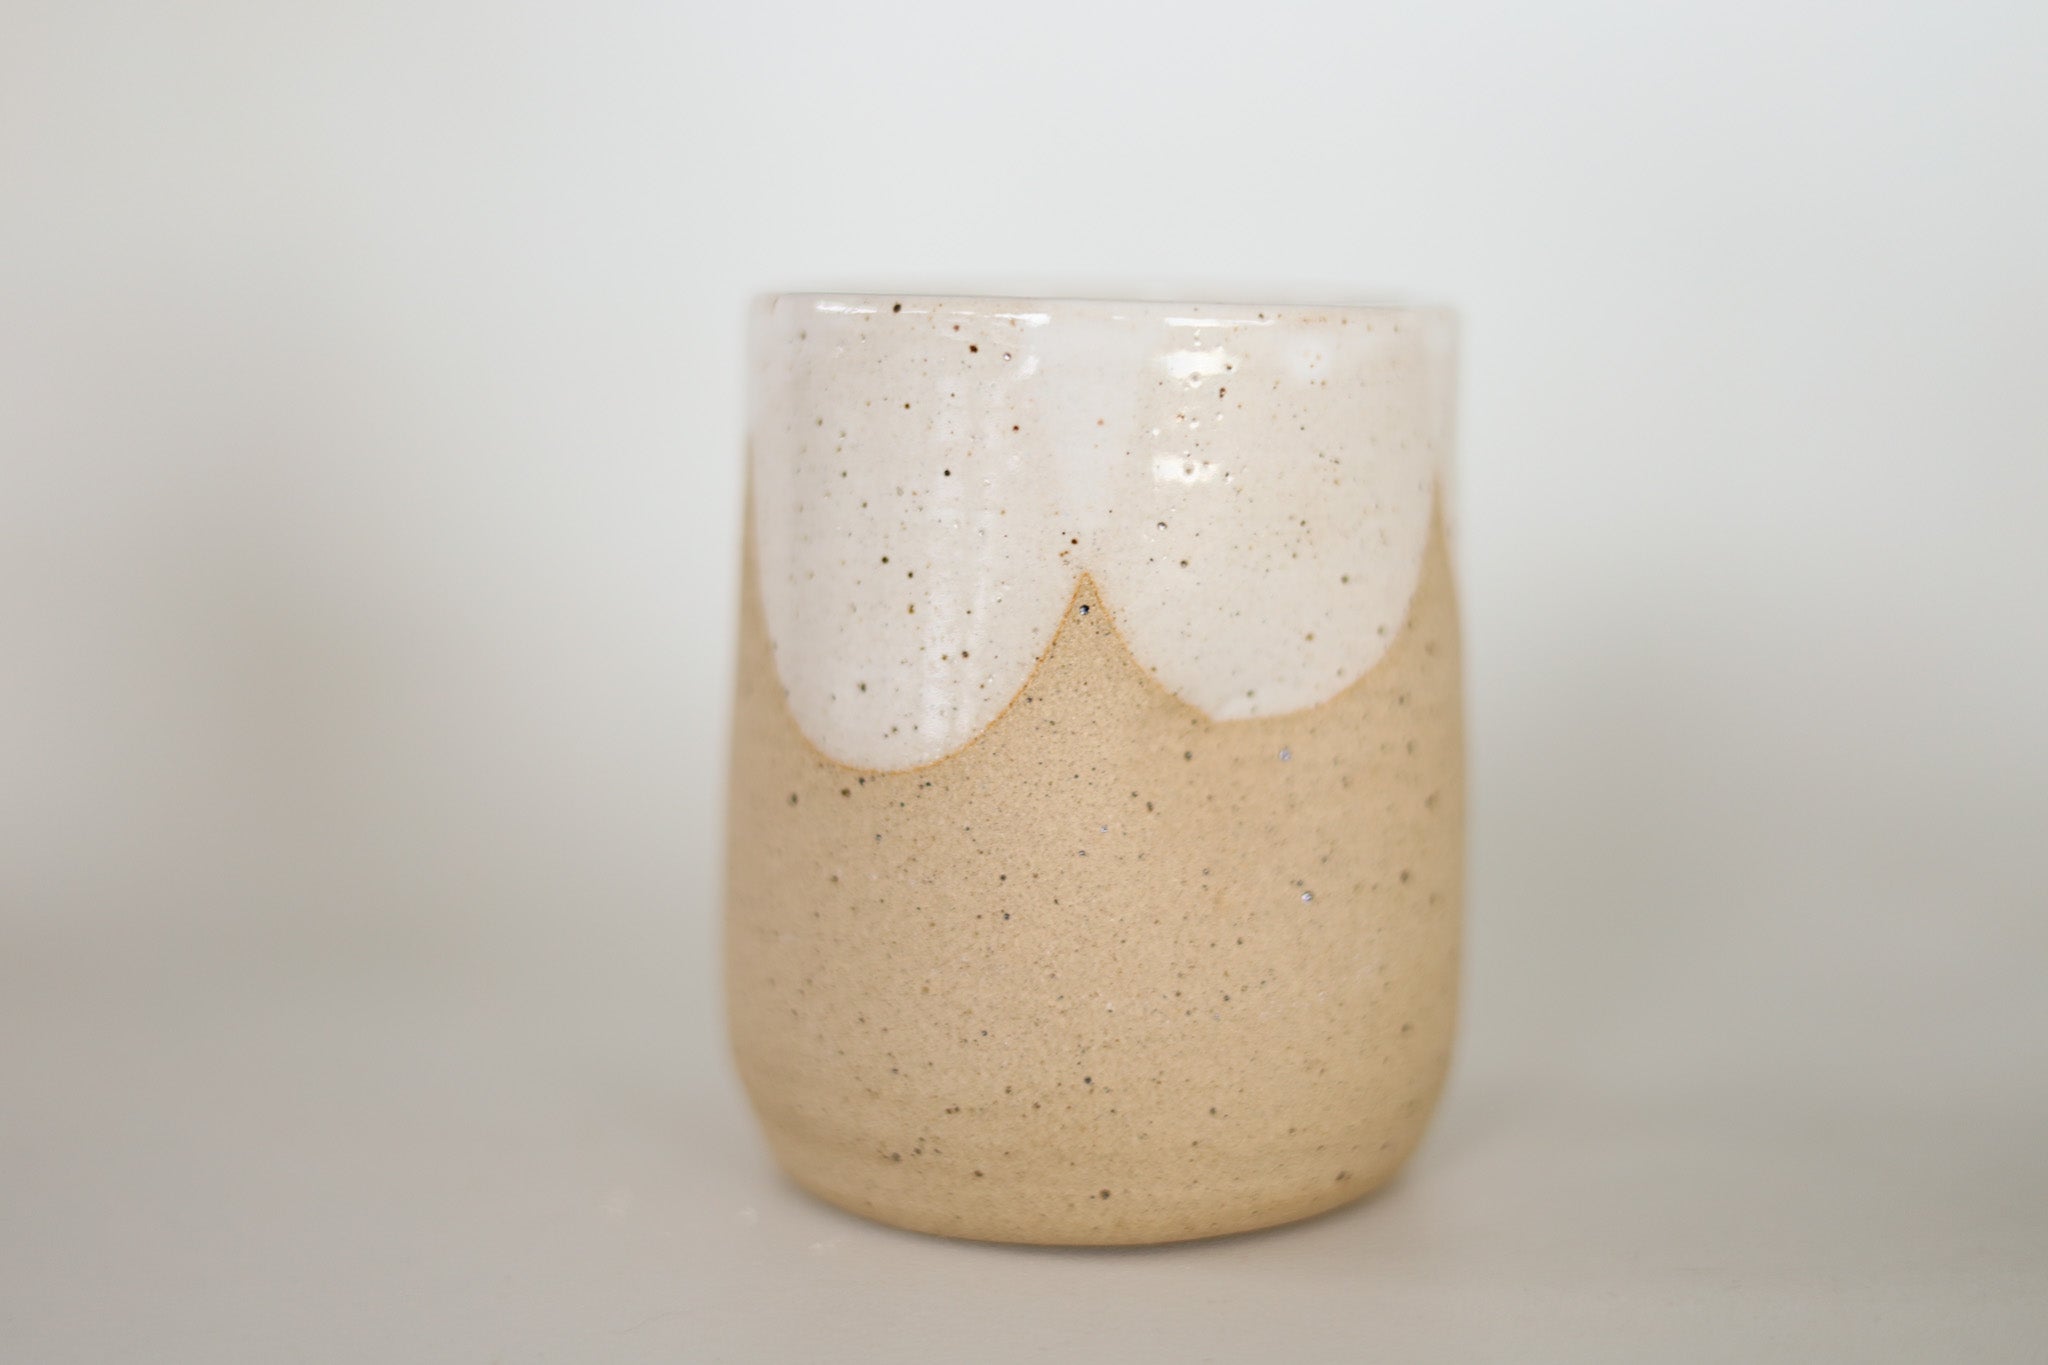 Handmade Coffee Mug - Moss Glaze Mug with Handle - InFerment